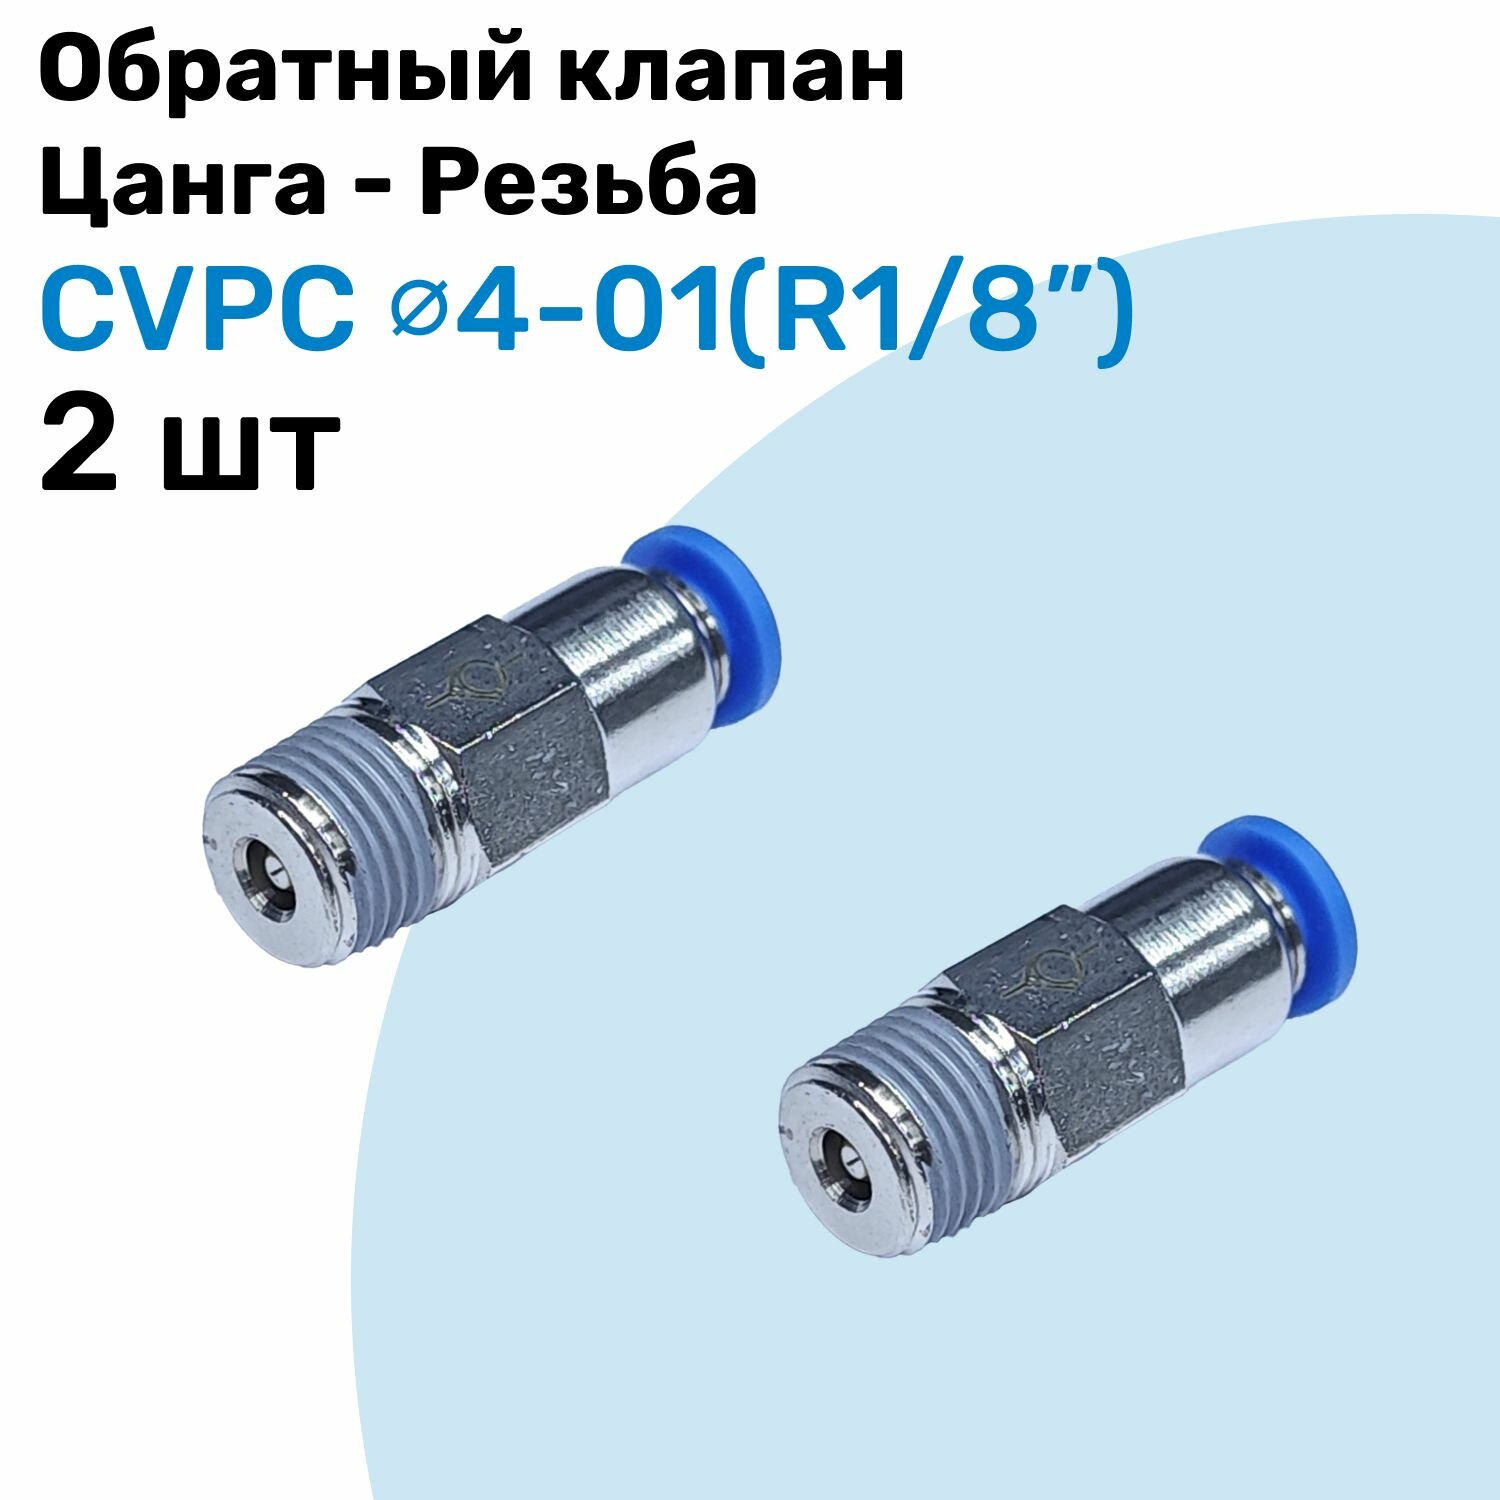 Обратный клапан латунный CVPC 4-01, 4мм - R1/8", Цанга - Внешняя резьба, Пневматический клапан NBPT, Набор 2шт